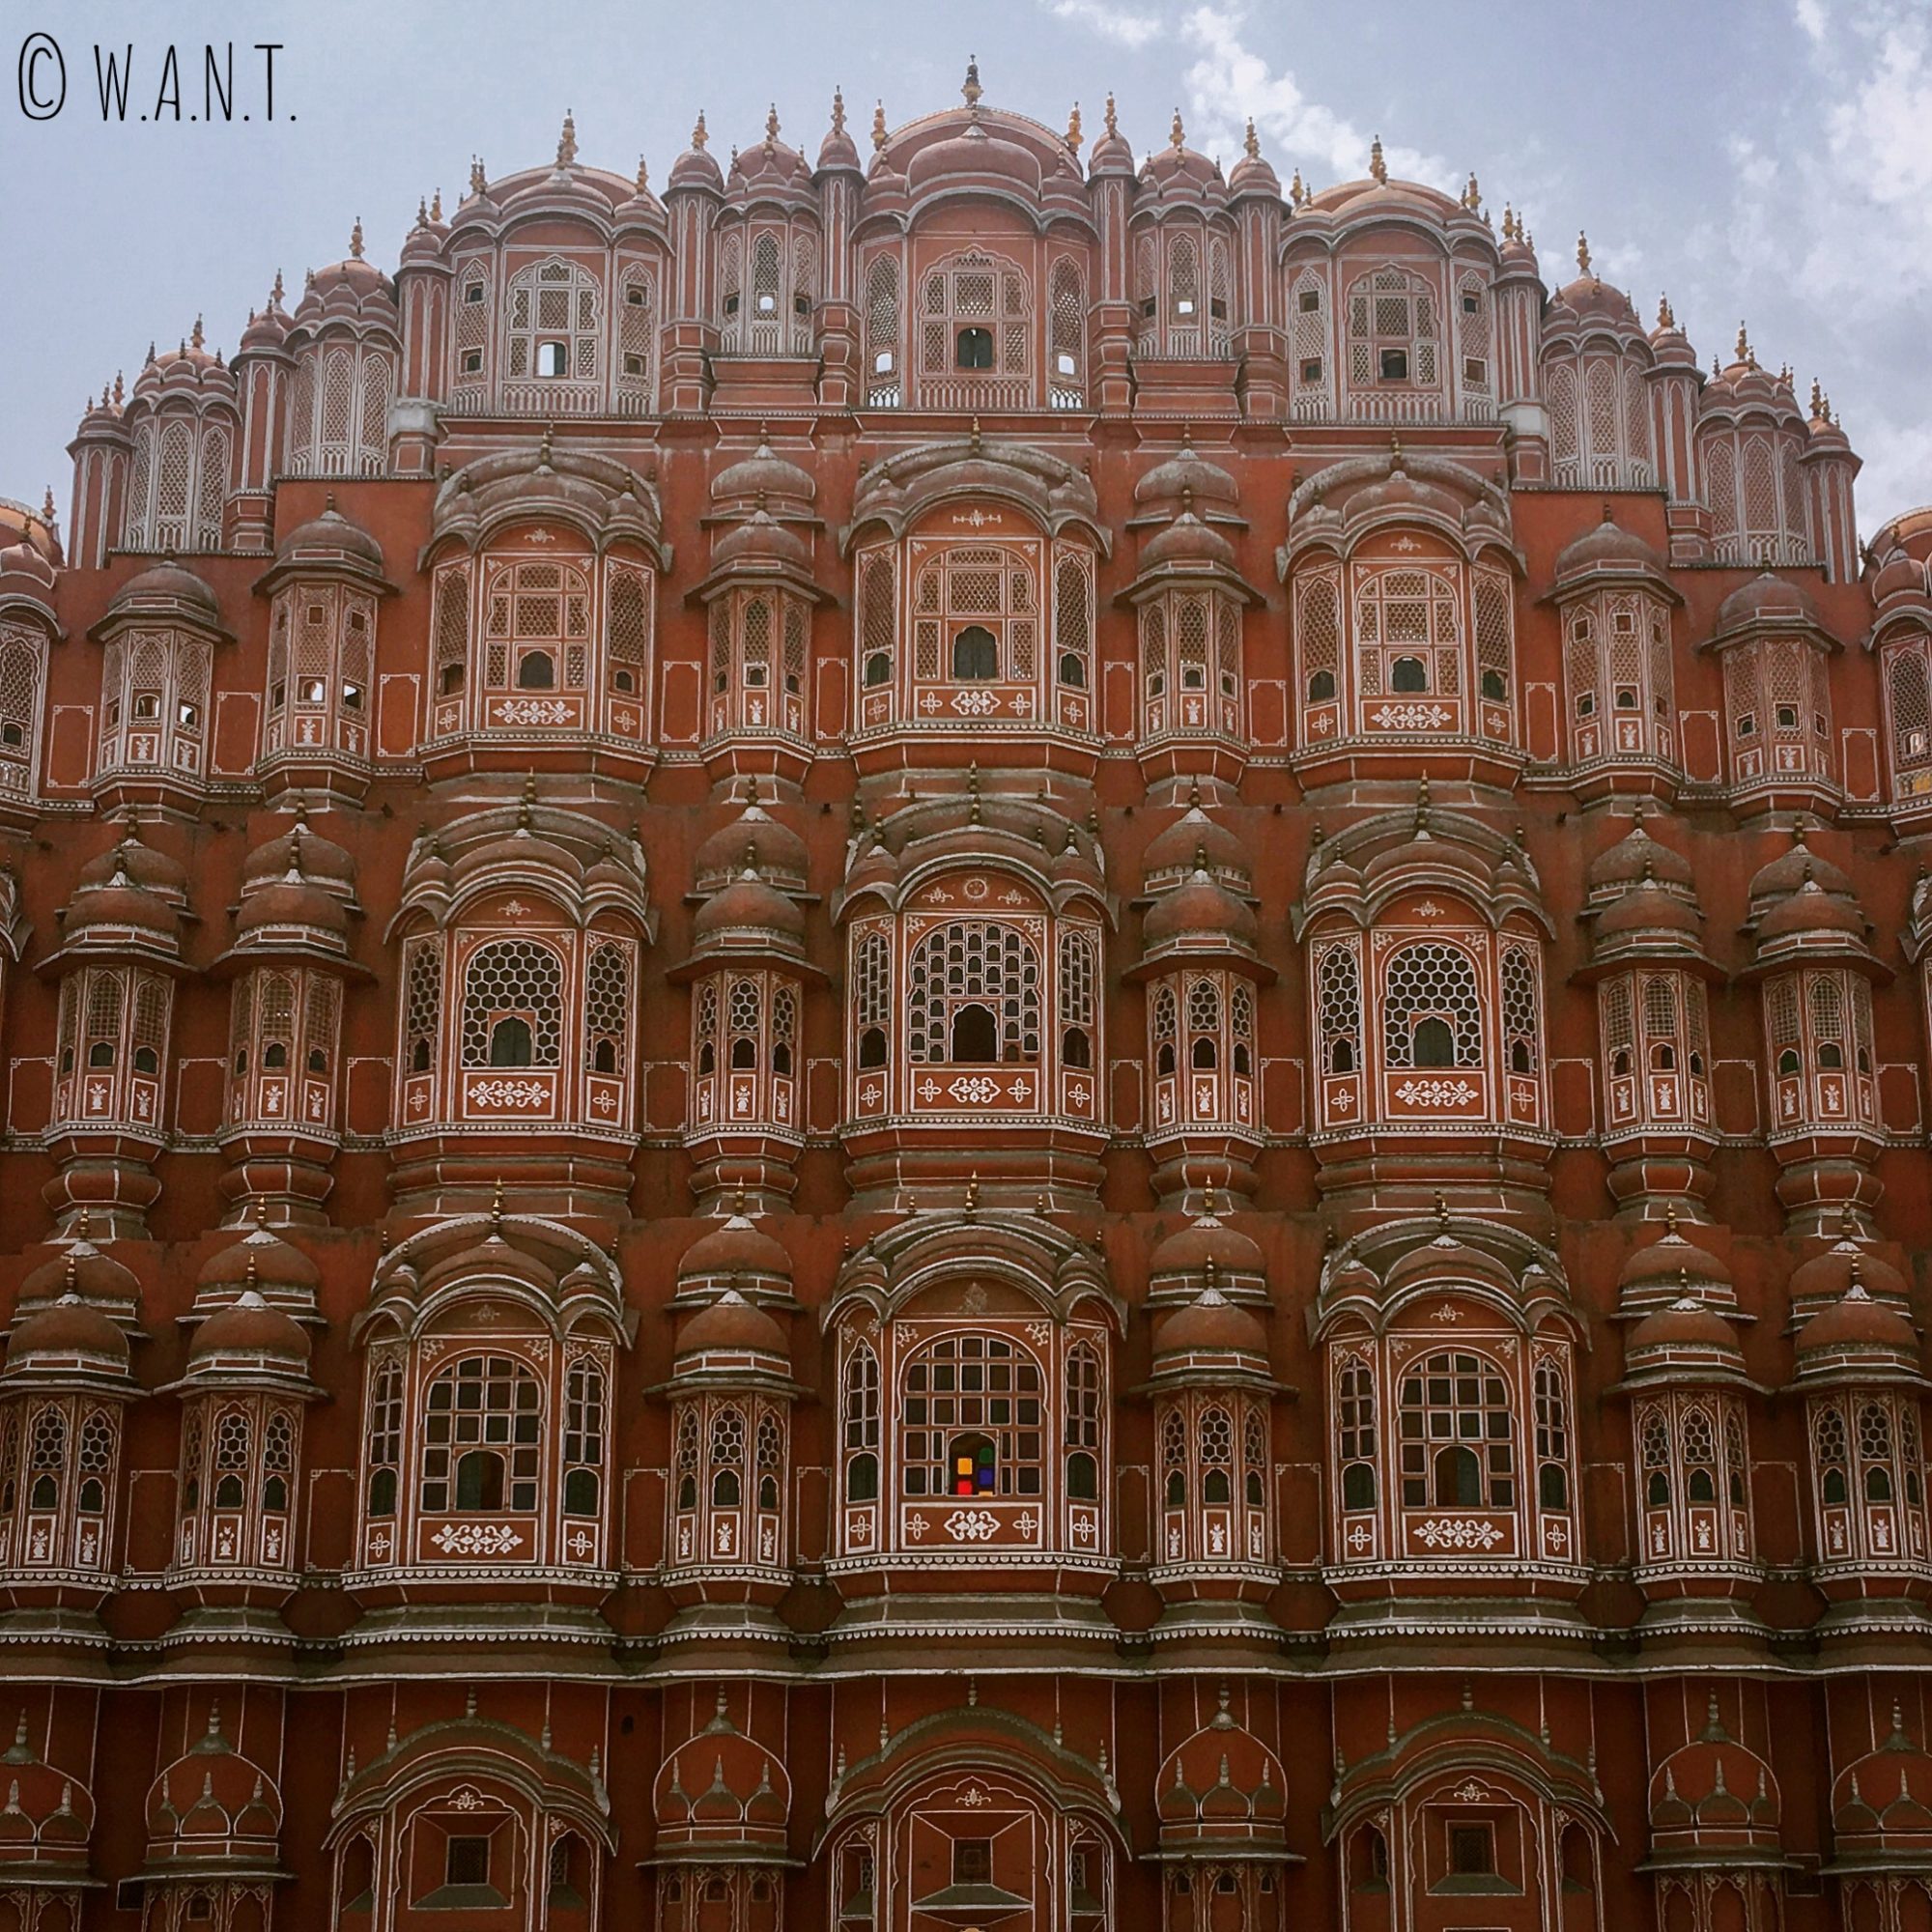 Le palais des vents et ses 152 fenêtres a fier allure dans les rues de Jaipur